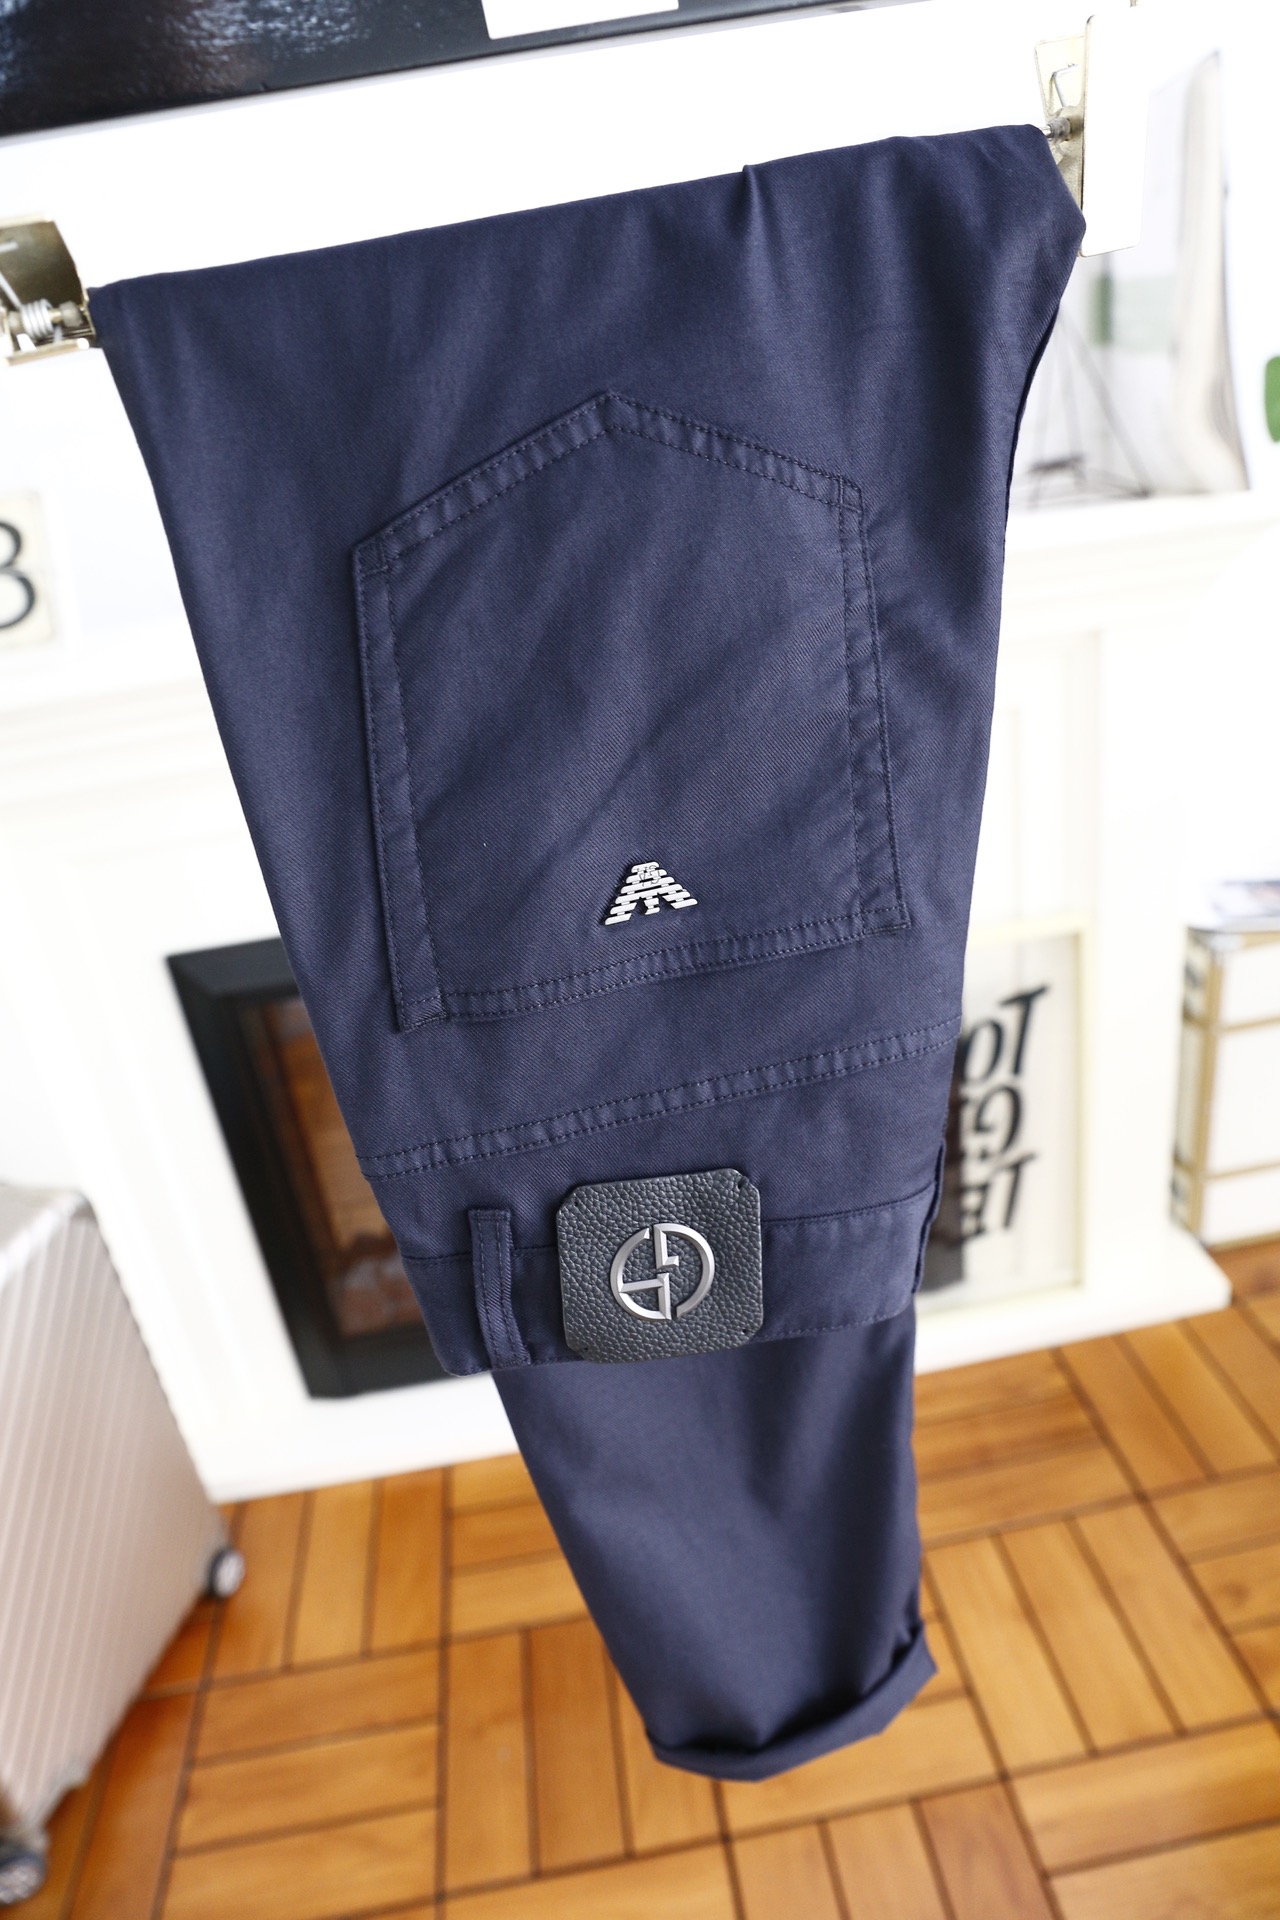 阿玛*/Arm*ni.24ss夏季新品！时尚男士休闲裤品牌全新推出系列设计师团队精心研发独家发售单品奢华